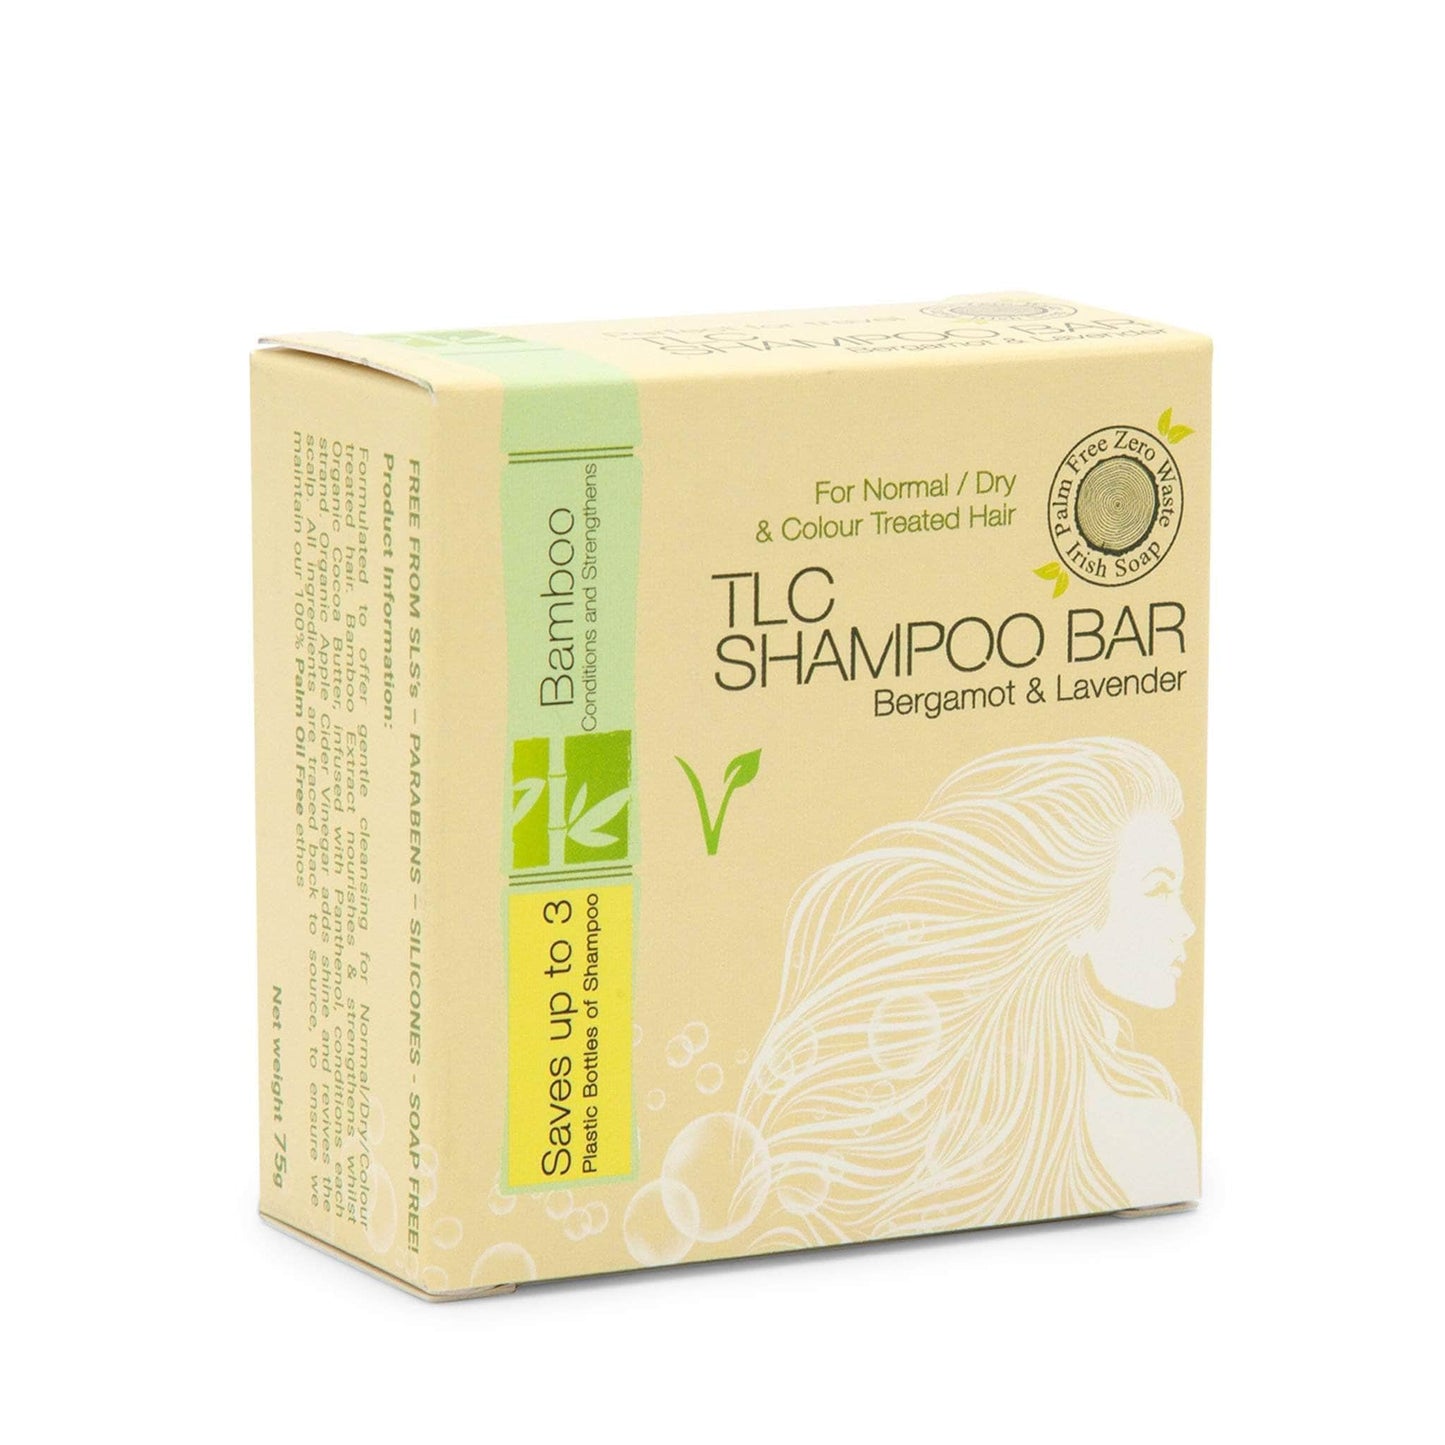 Palm Free Irish Soap Shampoo Silky Soft TLC Shampoo Bar - Bergamot & Lavender